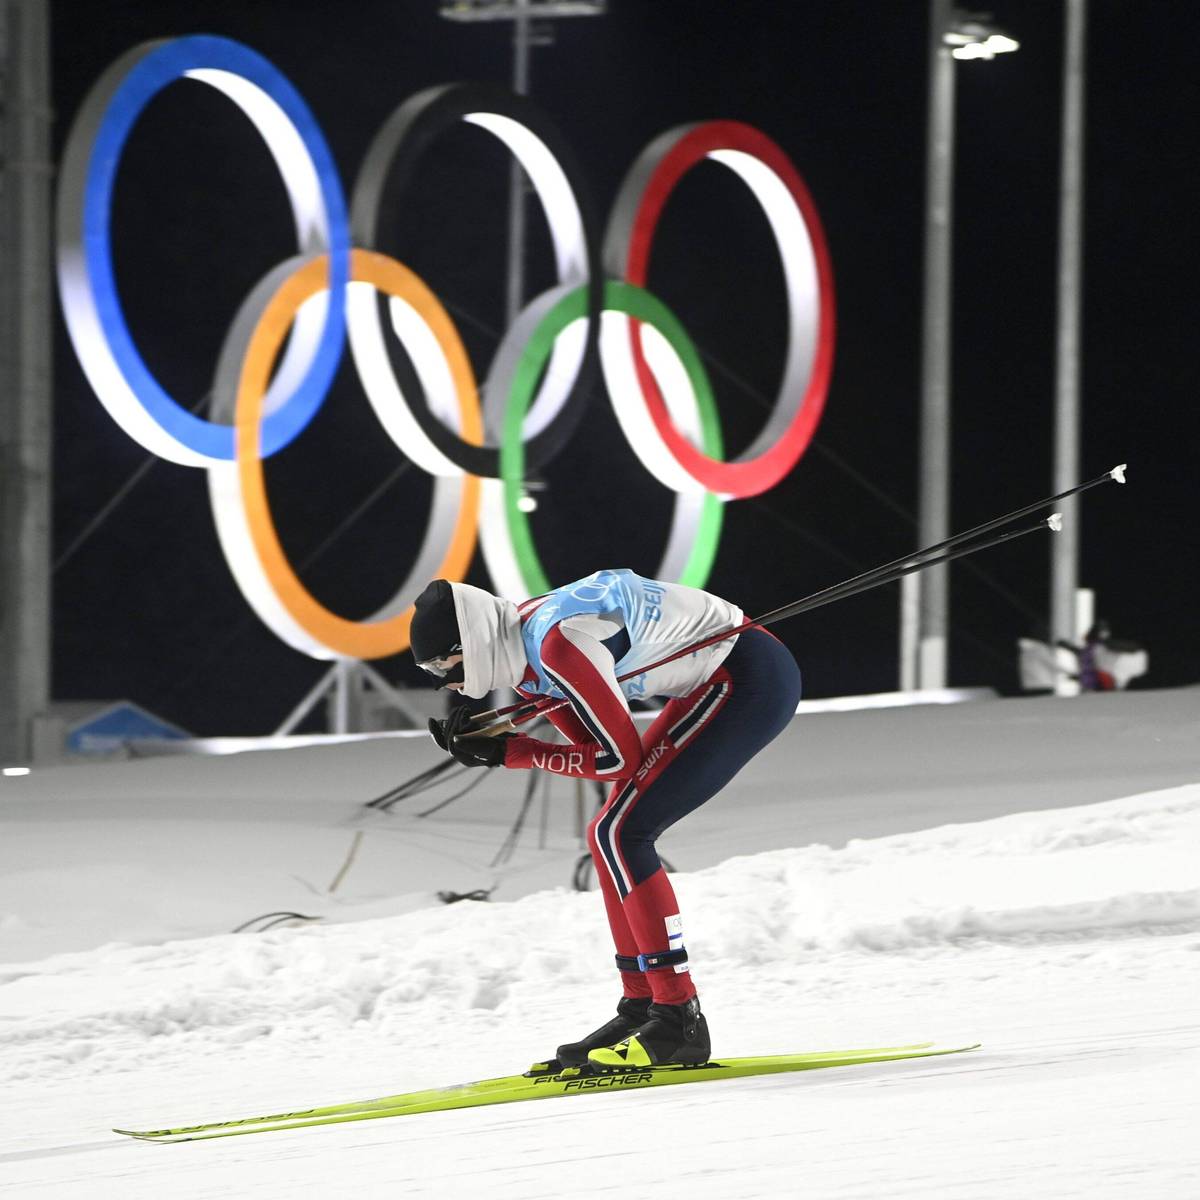 Die Nordische Kombination zittert um ihre Zukunft bei den Olympischen Spielen. Schon jetzt tobt der norwegische Superstar Jarl Magnus Riiber wegen der Gedankenspiele der IOC.